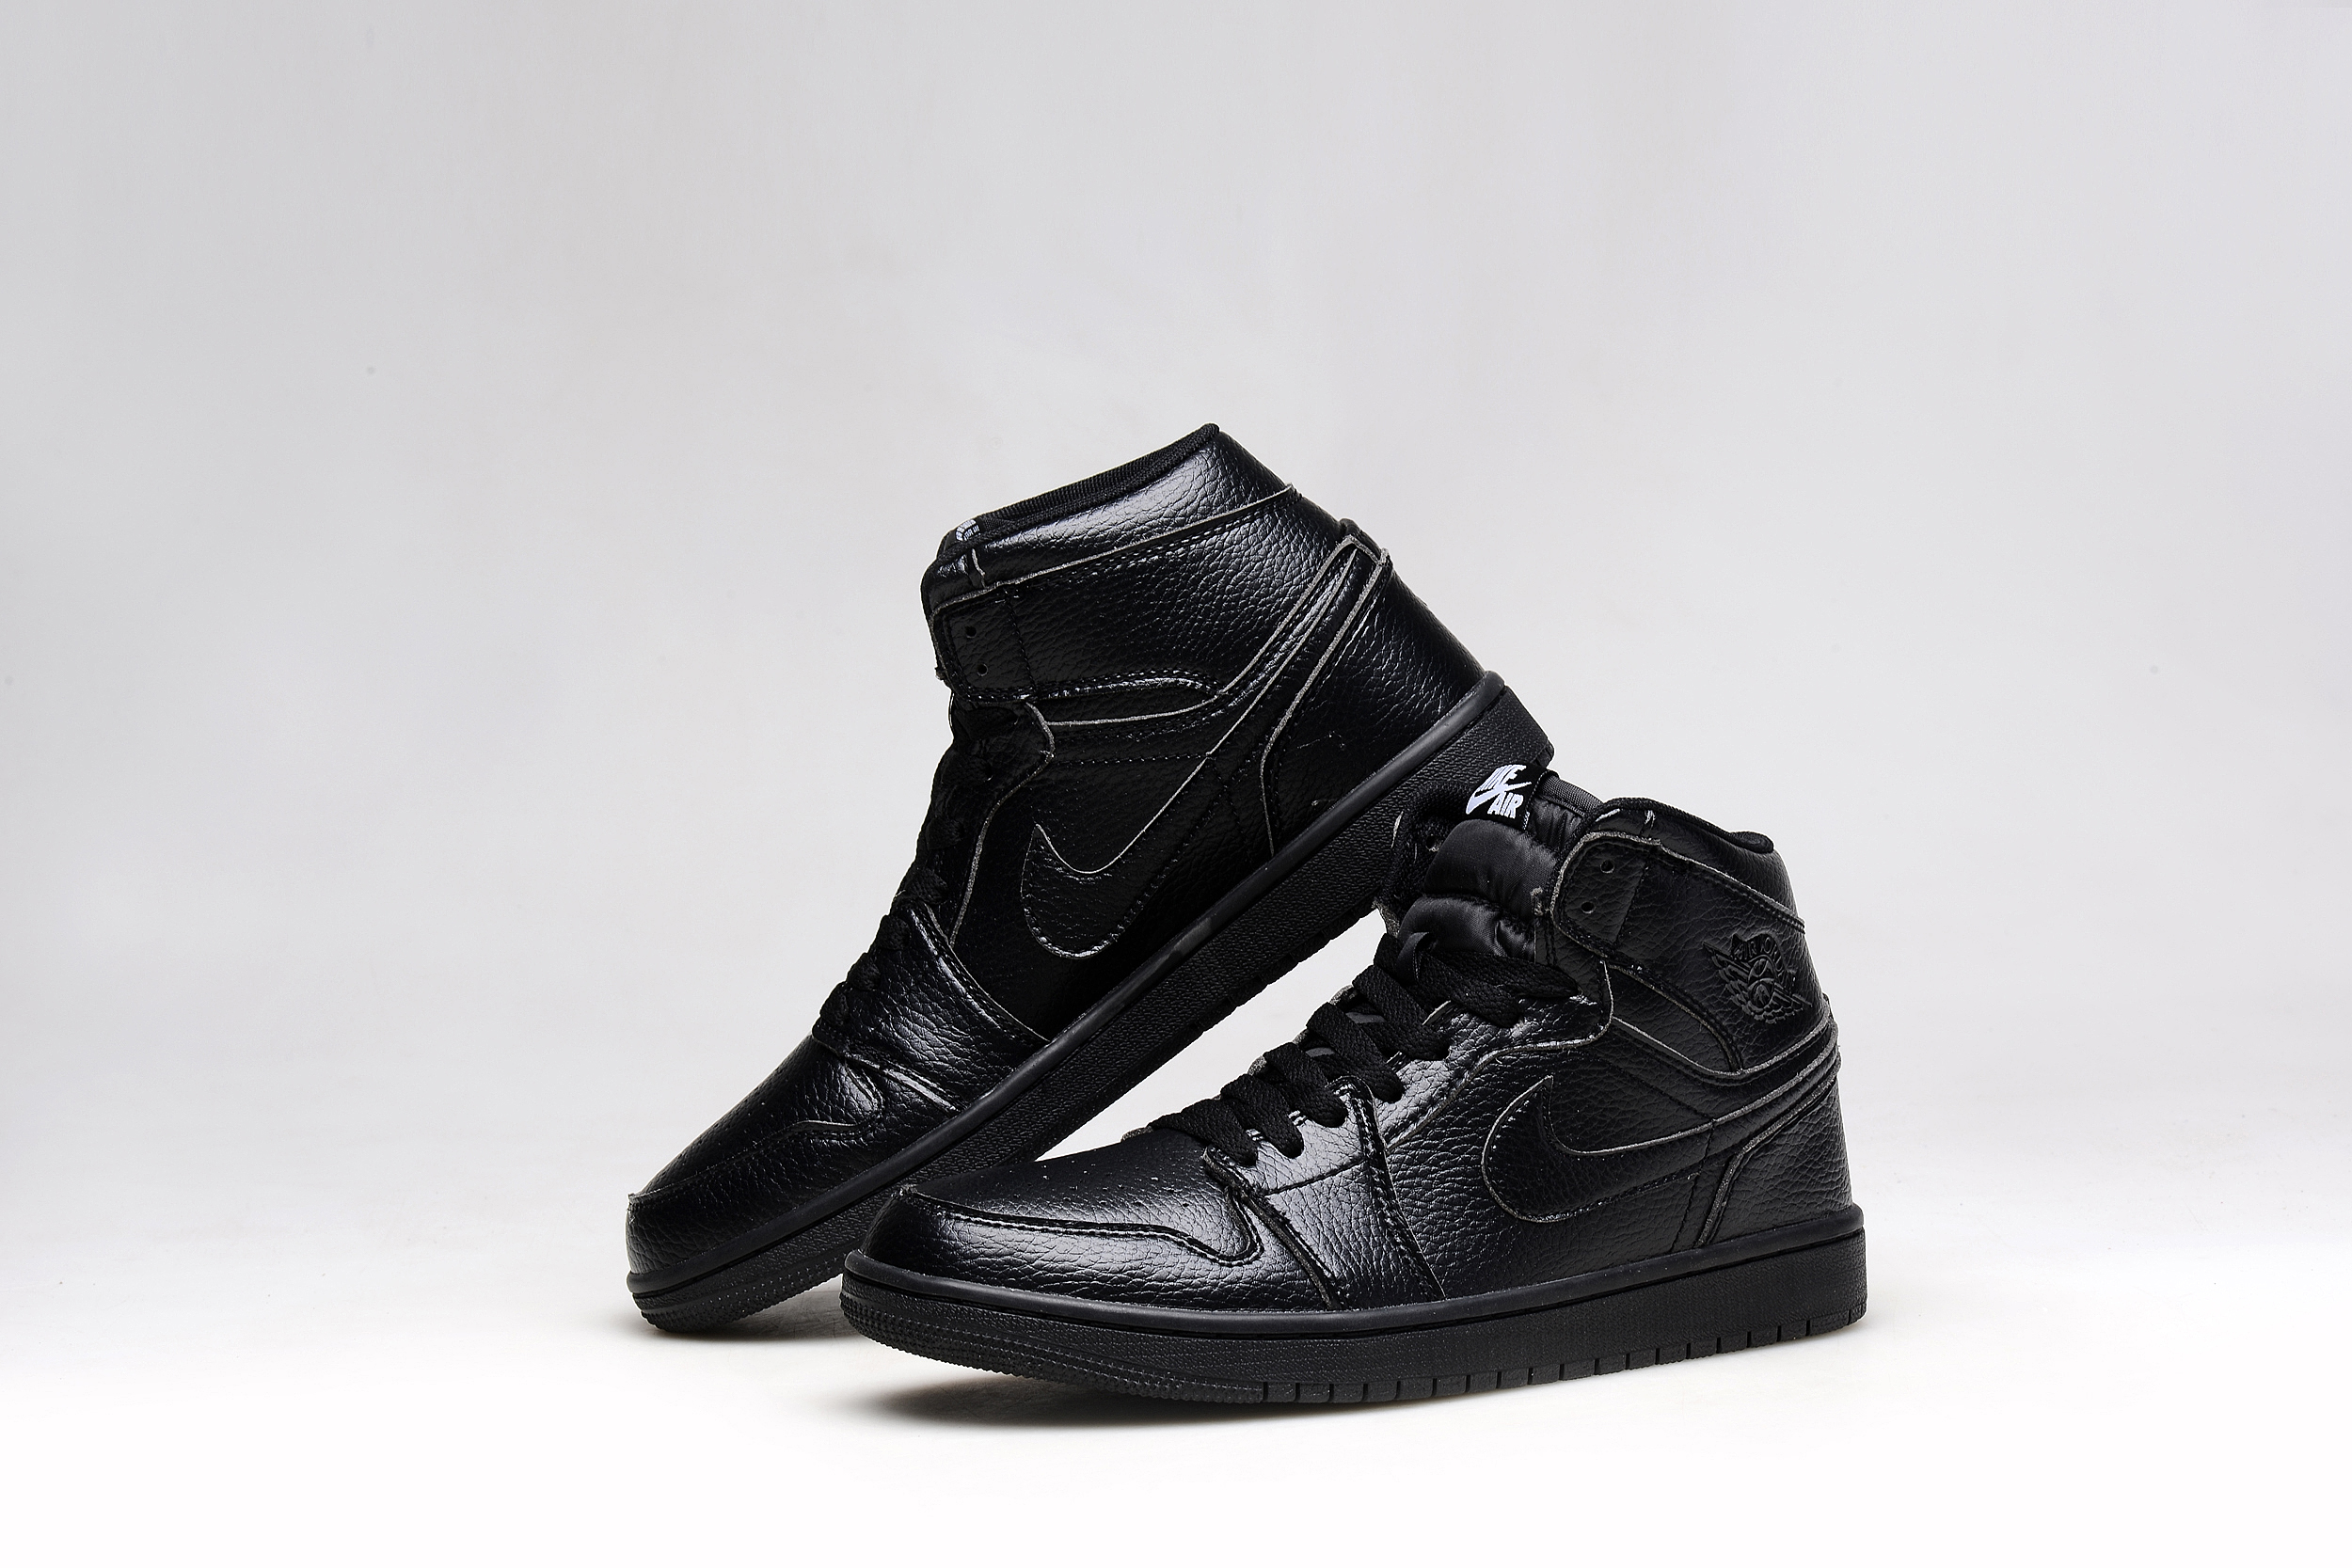 Original Air Jordan 1 All Black Basketball Shoes